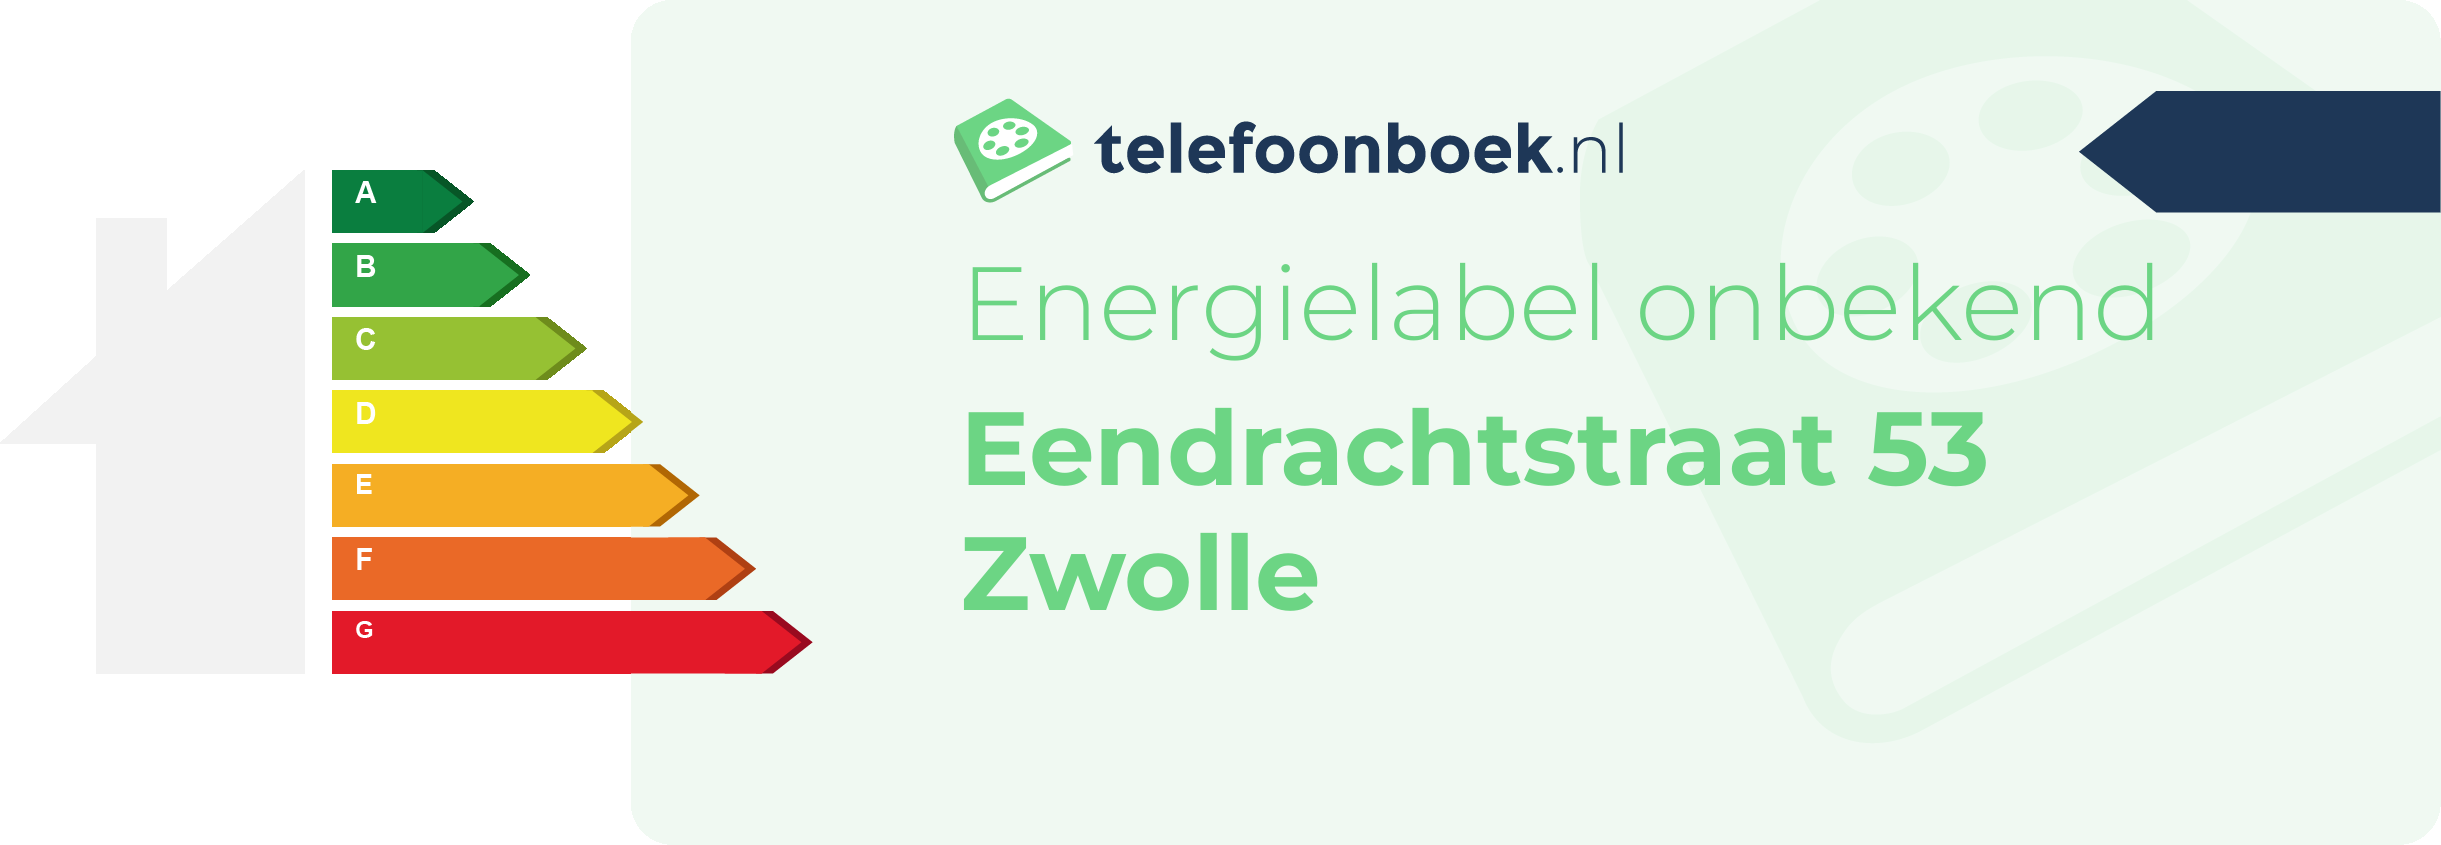 Energielabel Eendrachtstraat 53 Zwolle